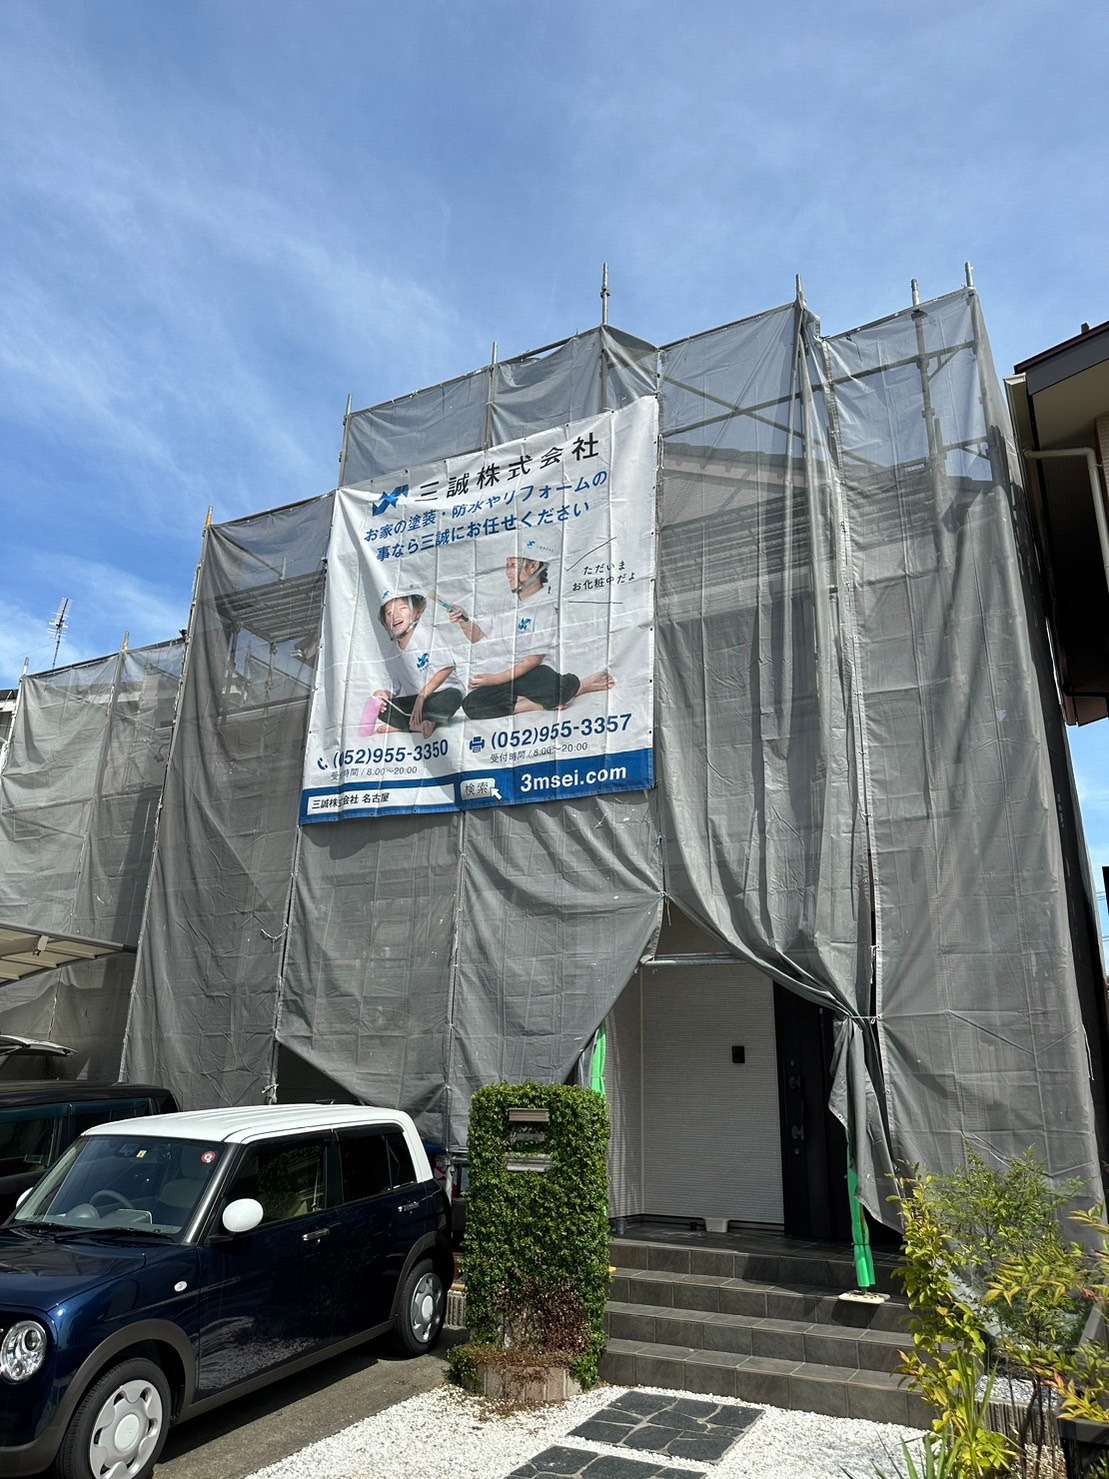 愛知県名古屋市で塗装業をしています三誠株式会社です👷🎨外壁塗装は弊社にお任せください！お見積り無料です✨